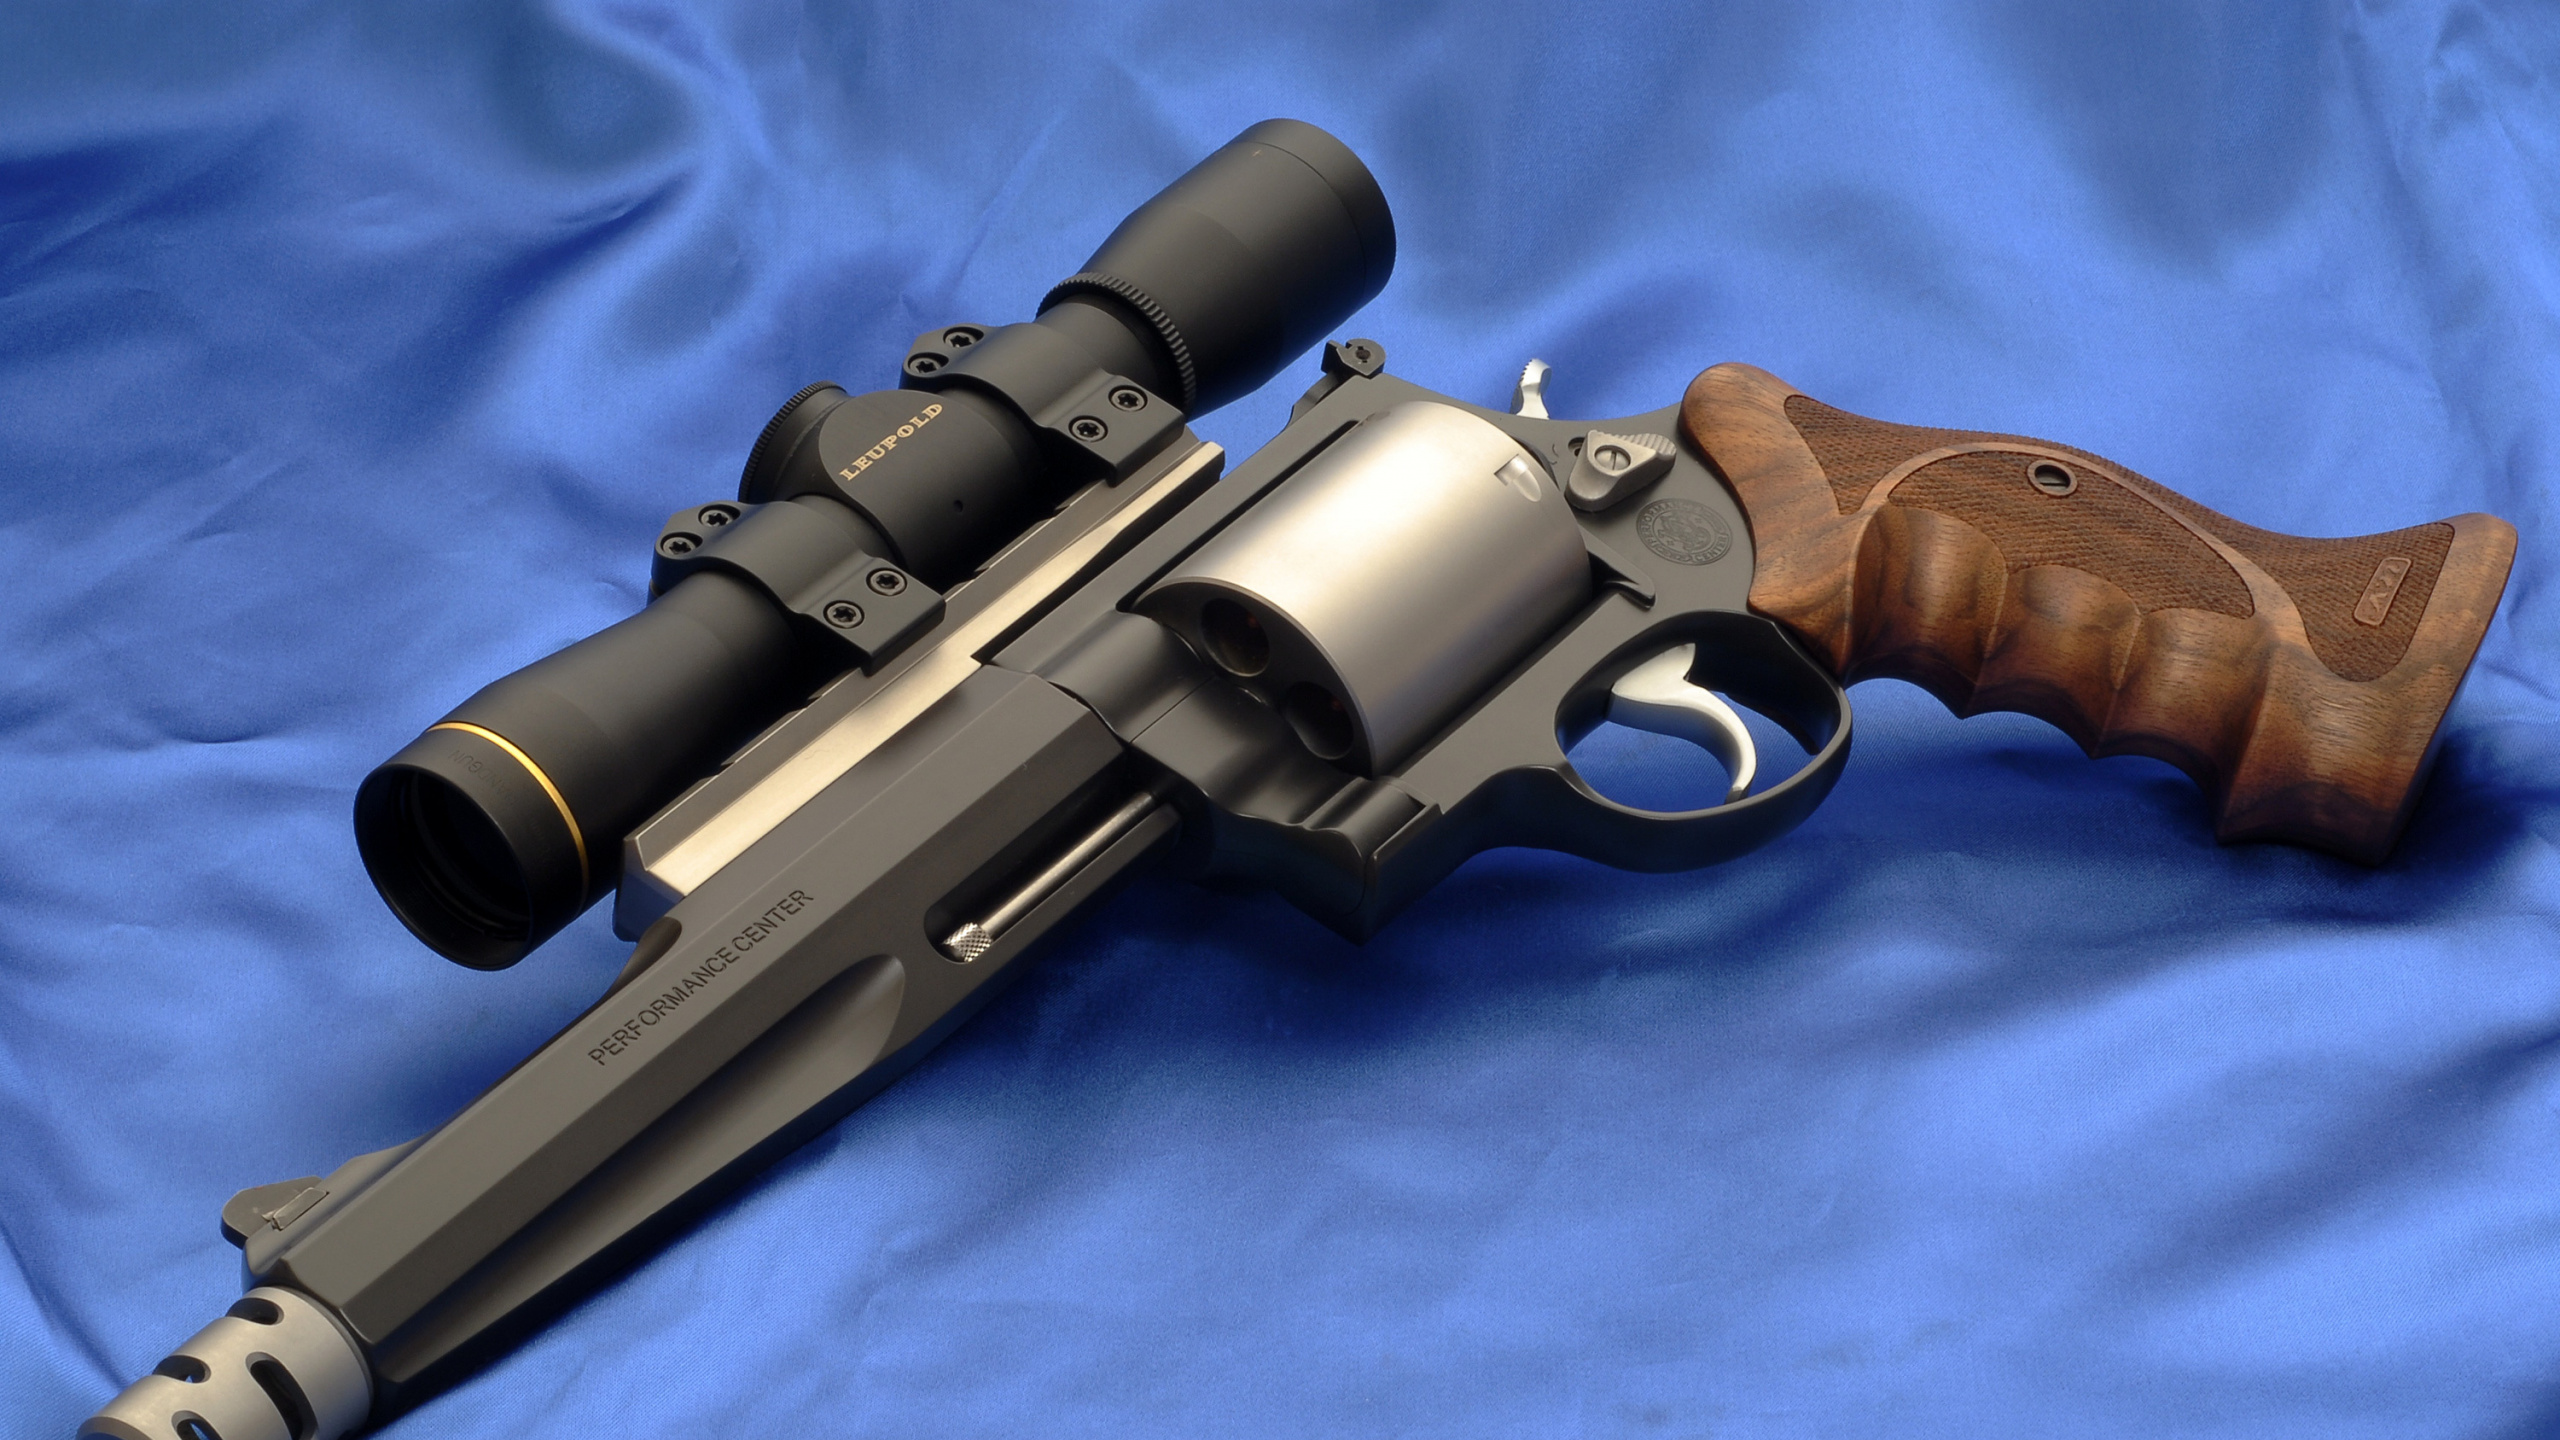 Handfeuerwaffe, Feuerwaffe, Trigger, Revolver, Luftgewehr. Wallpaper in 2560x1440 Resolution